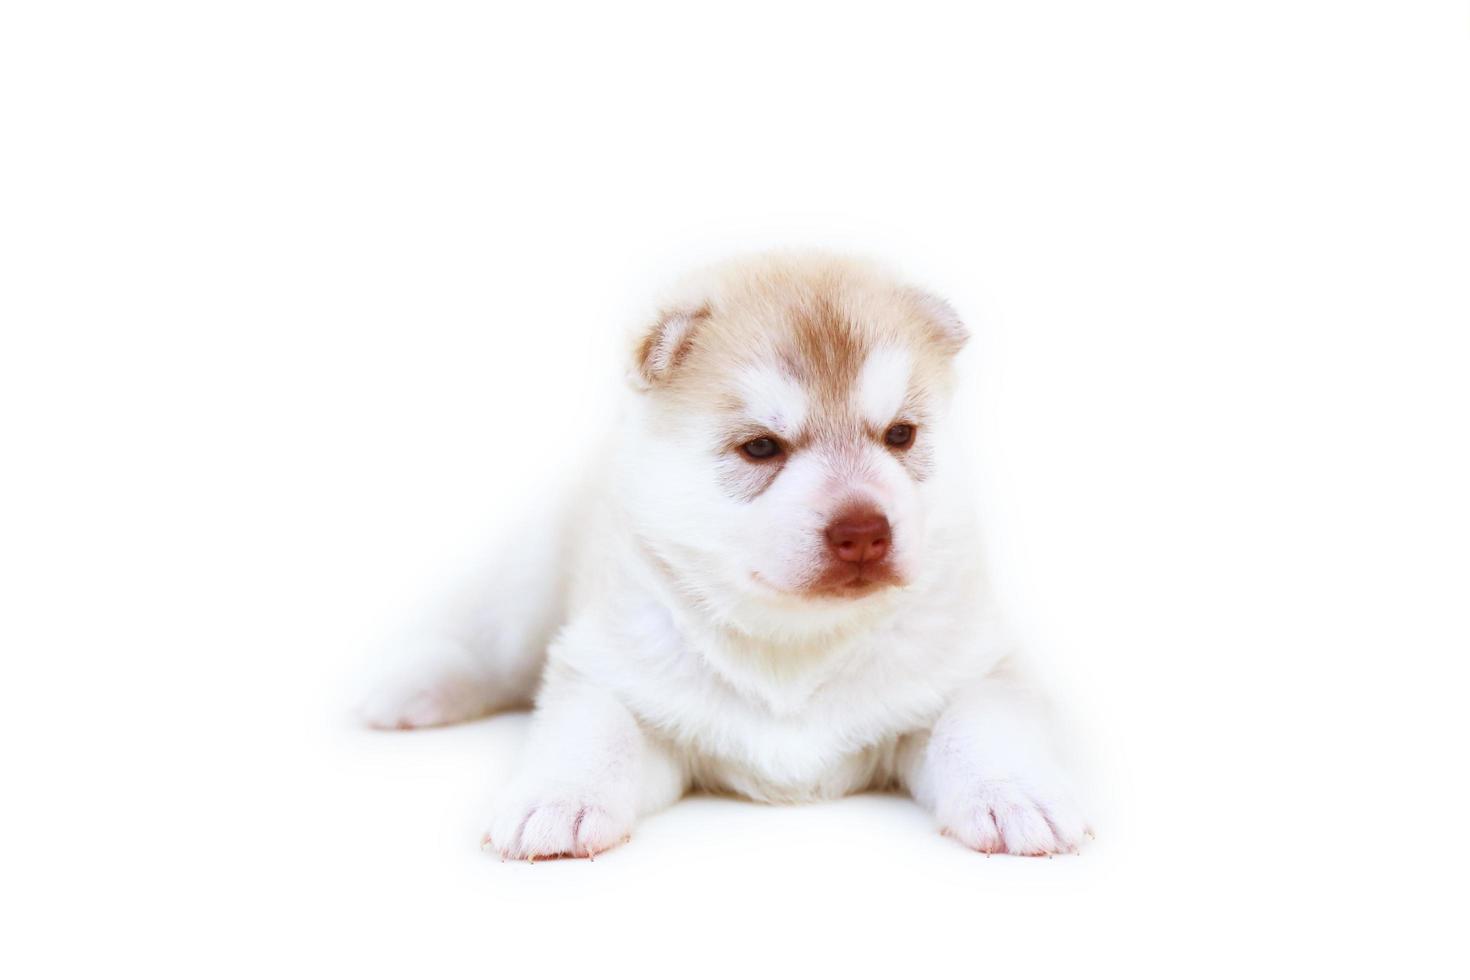 pasgeboren Siberische husky pup licht rode en witte kleuren liggend op een witte achtergrond. pasgeboren pluizig puppy geïsoleerd op een witte achtergrond. foto